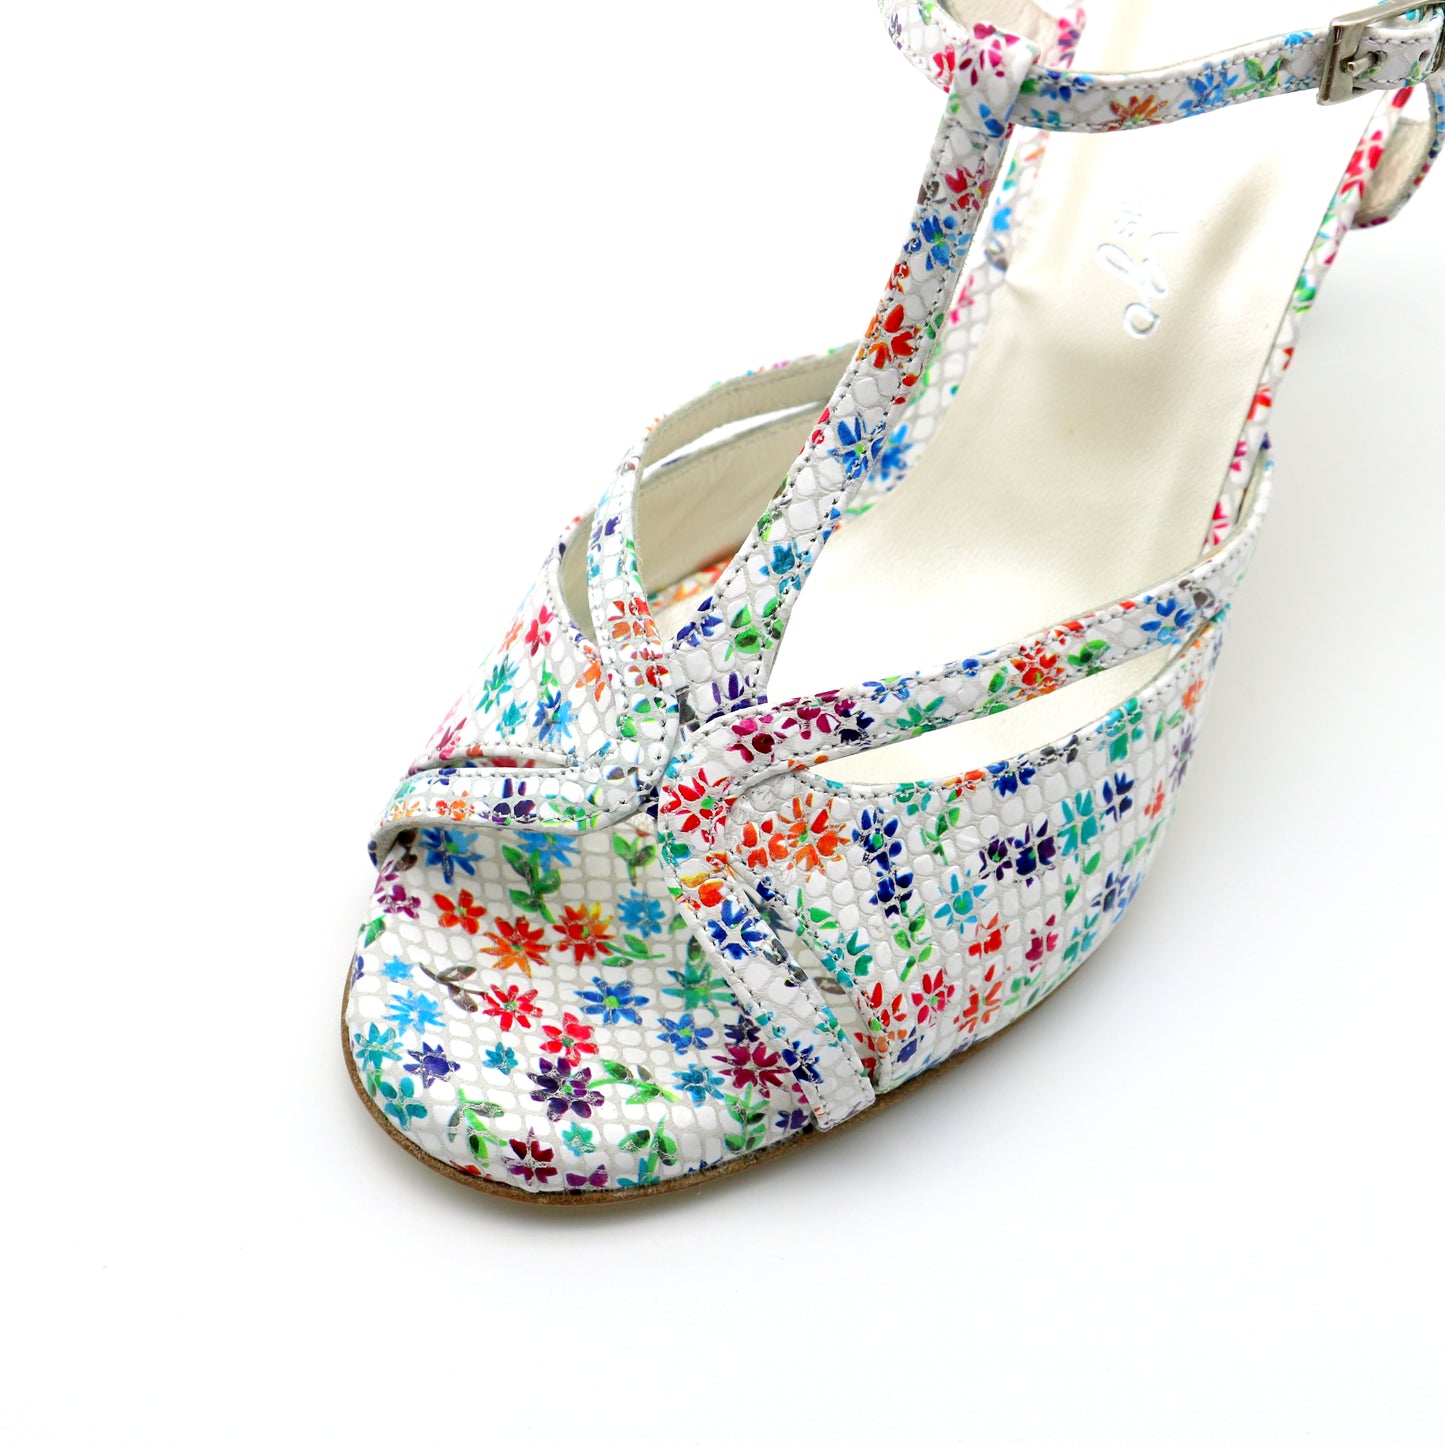 Salomé Primavera heels 7cm